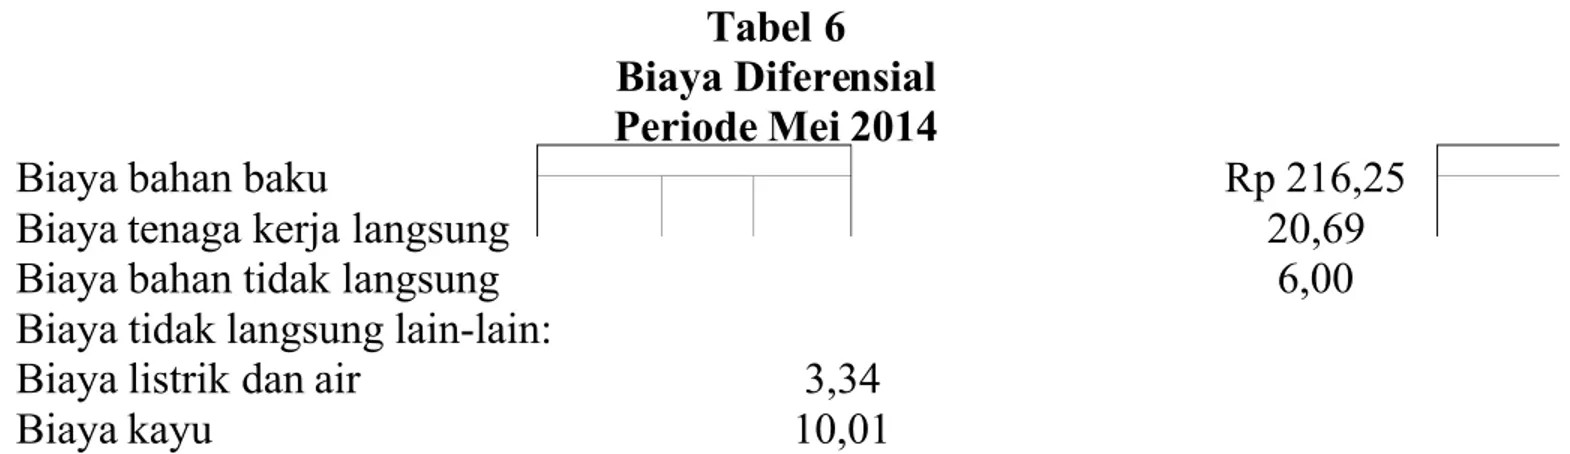 Tabel 6 Biaya Diferensial Periode Mei 2014